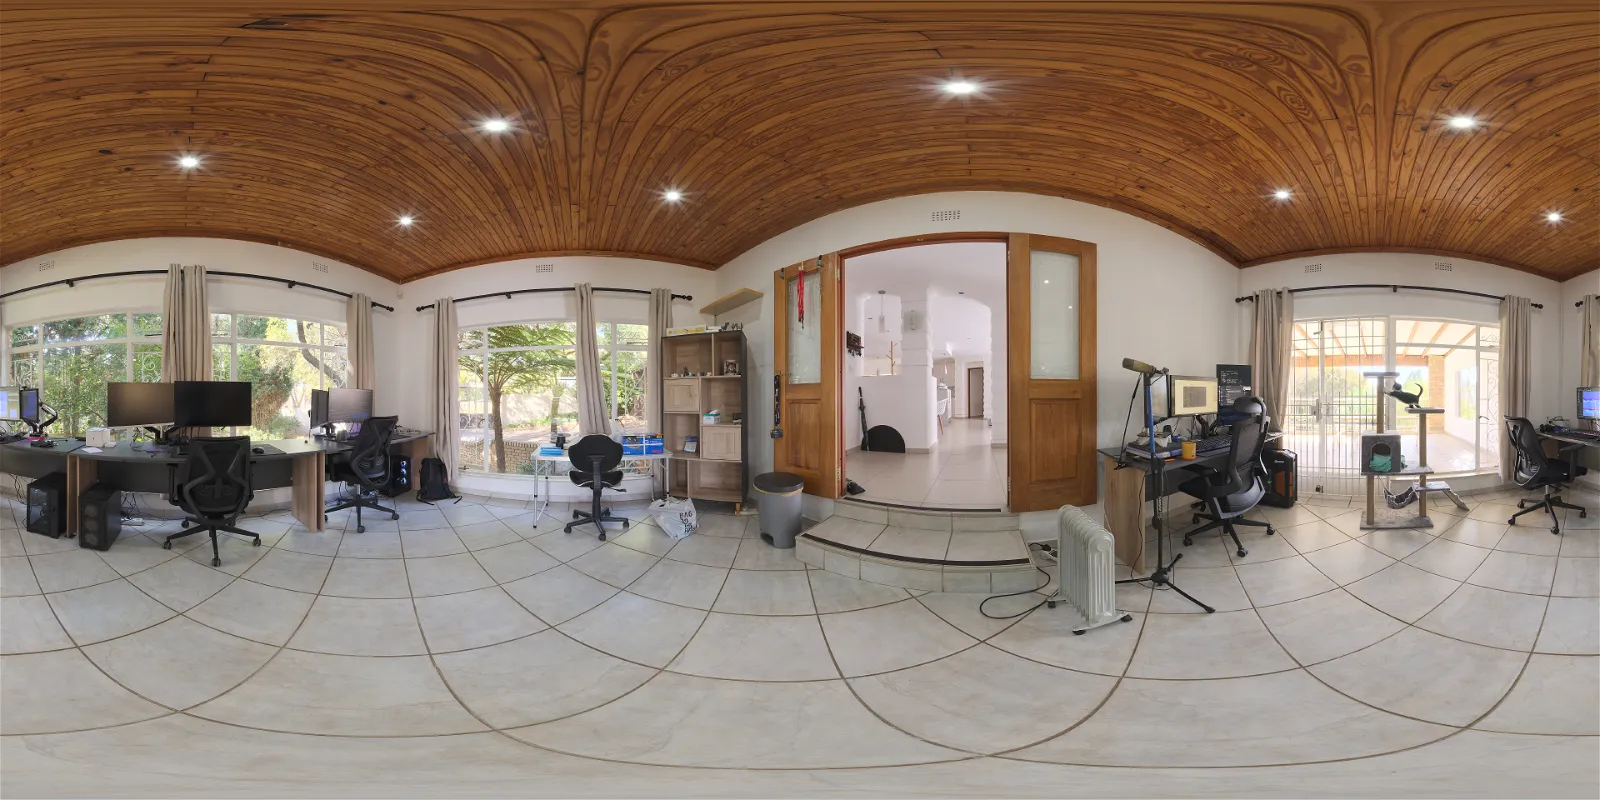 HDRI – Poly Haven Studio – indoor